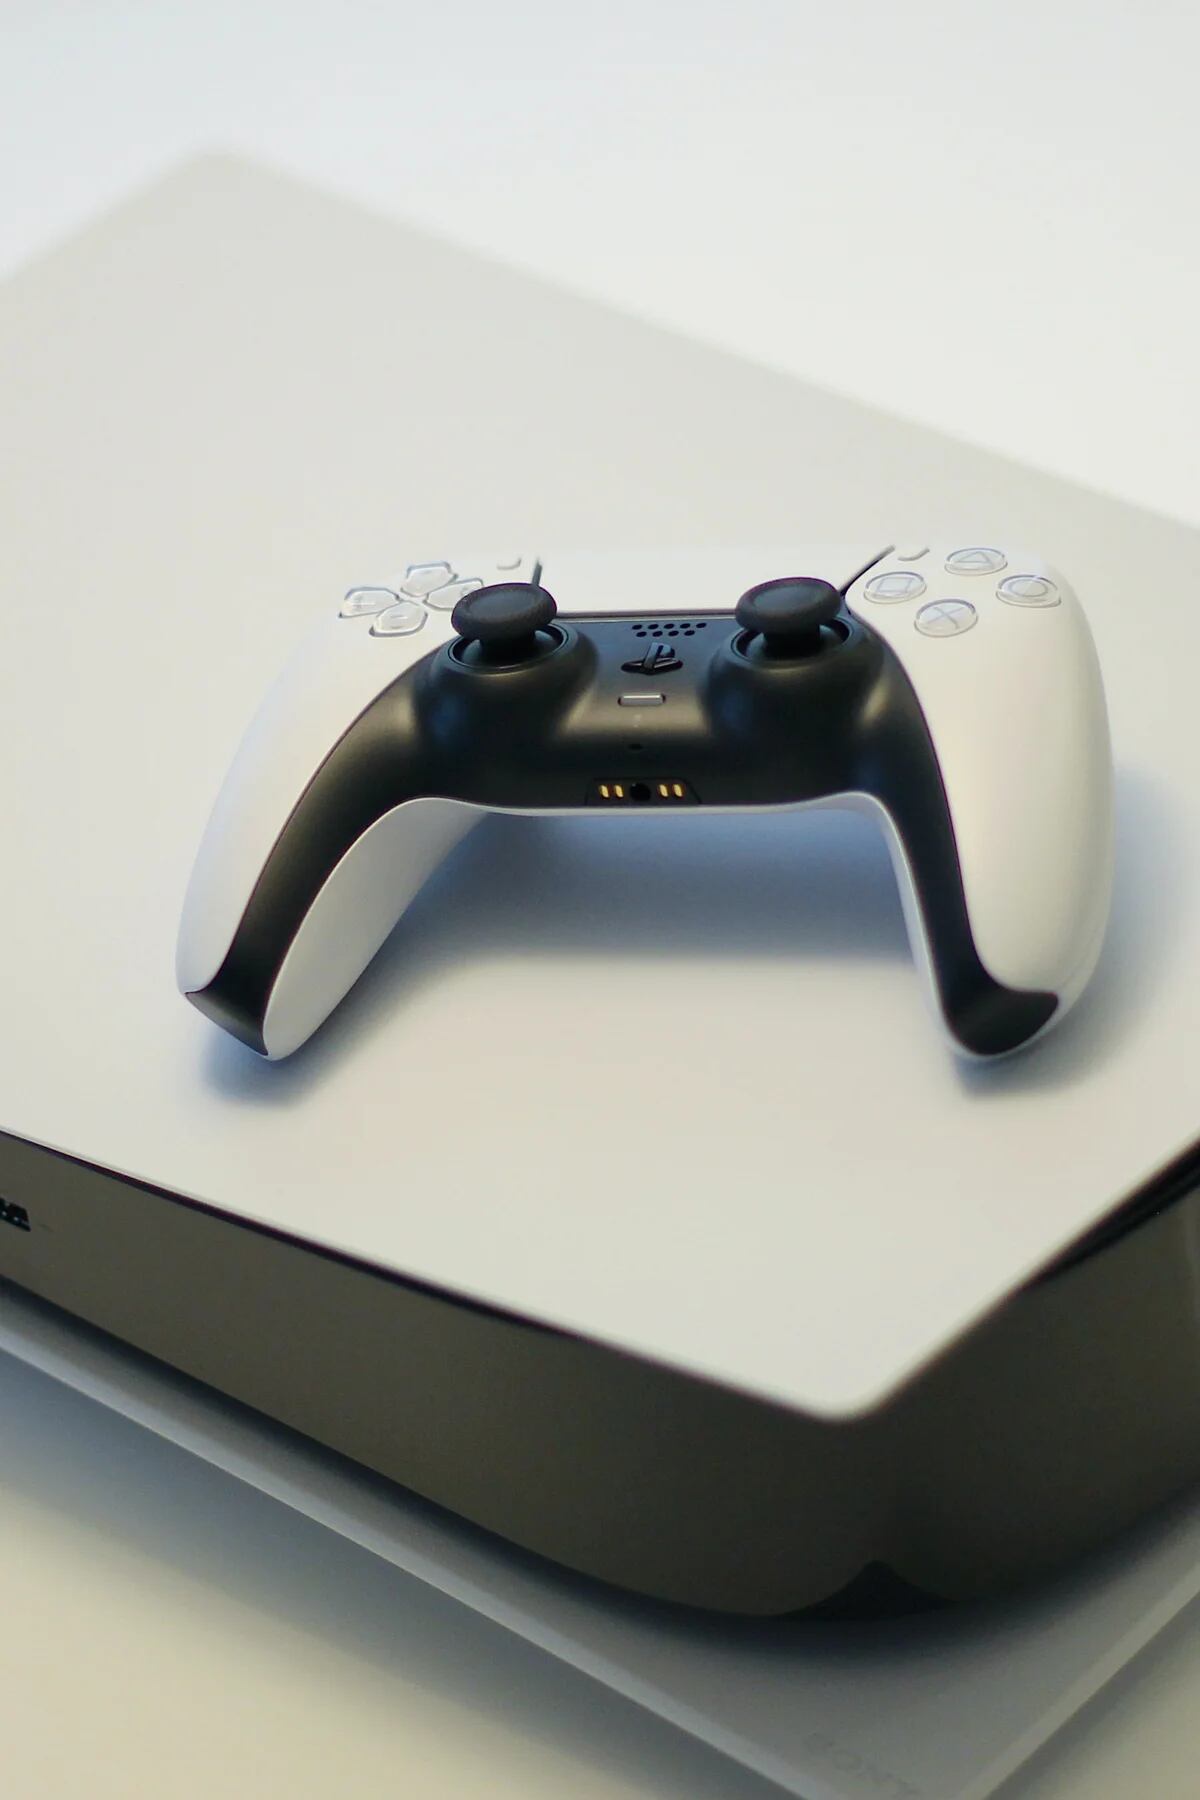 Sony lanzará una PS5 Slim este mismo año por 399 dólares según Microsoft